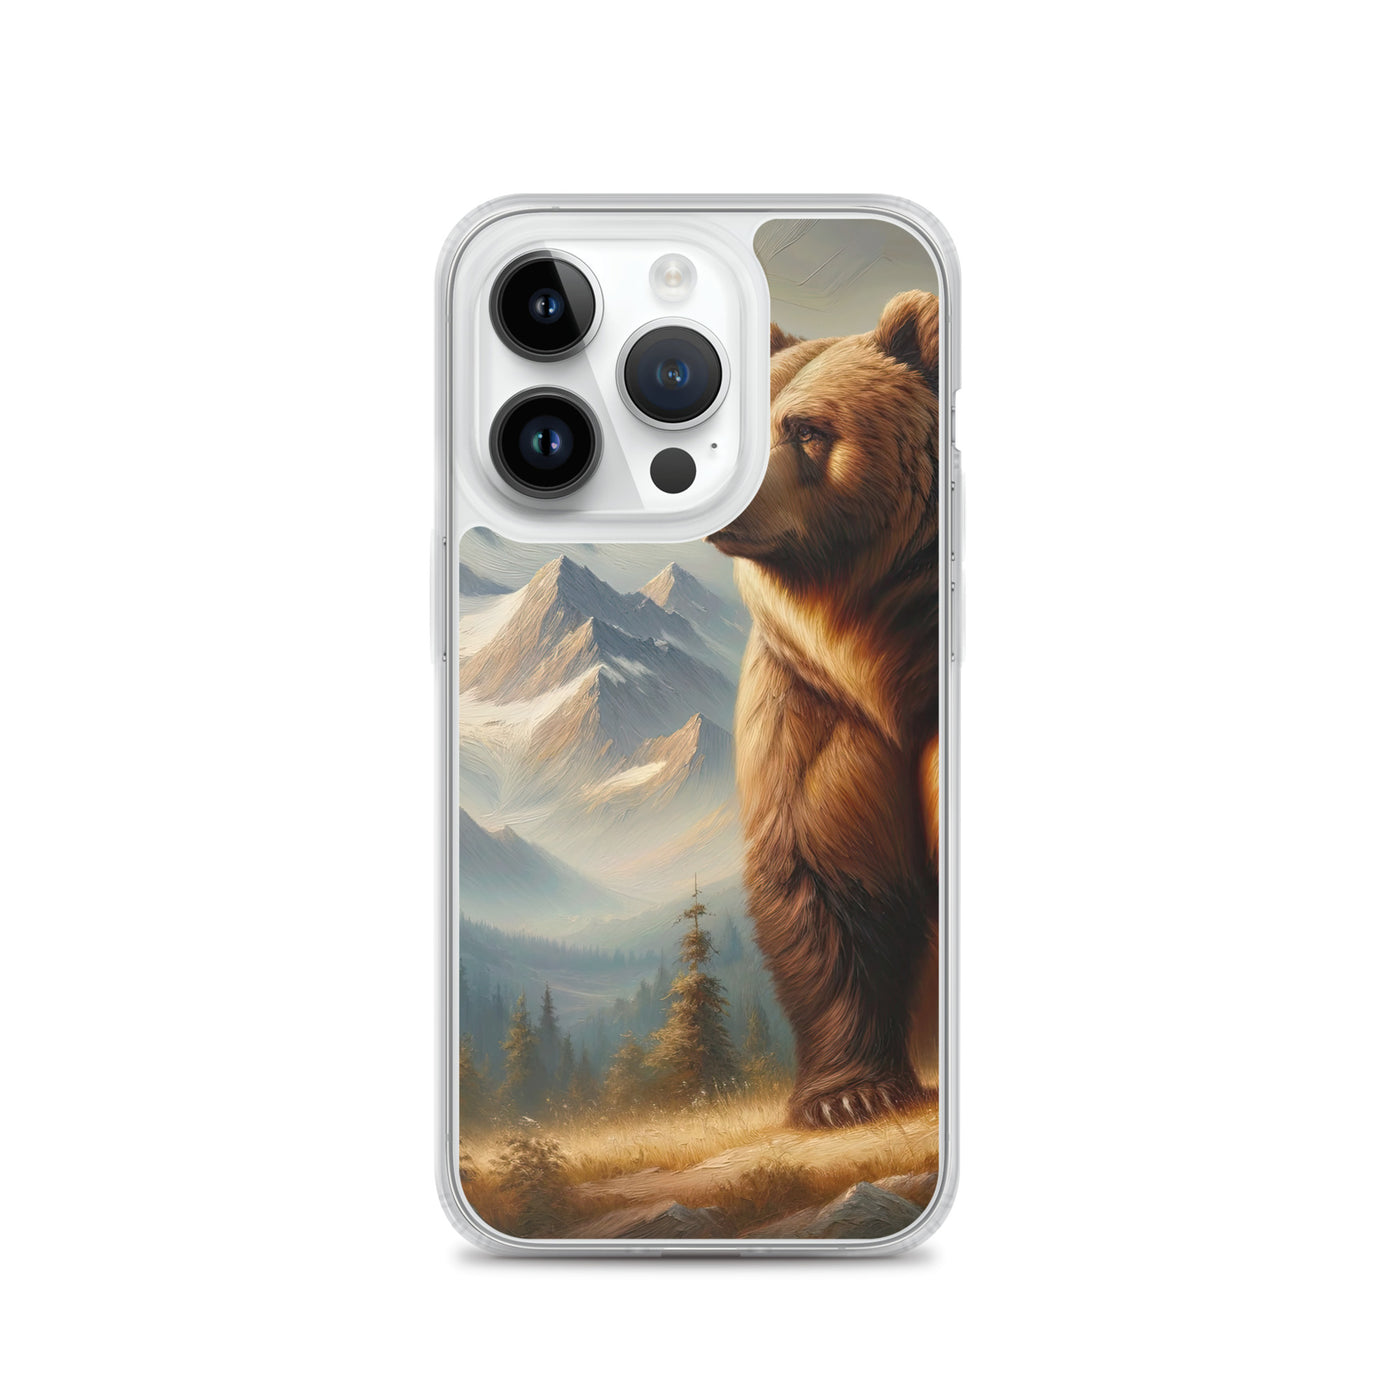 Ölgemälde eines königlichen Bären vor der majestätischen Alpenkulisse - iPhone Schutzhülle (durchsichtig) camping xxx yyy zzz iPhone 14 Pro